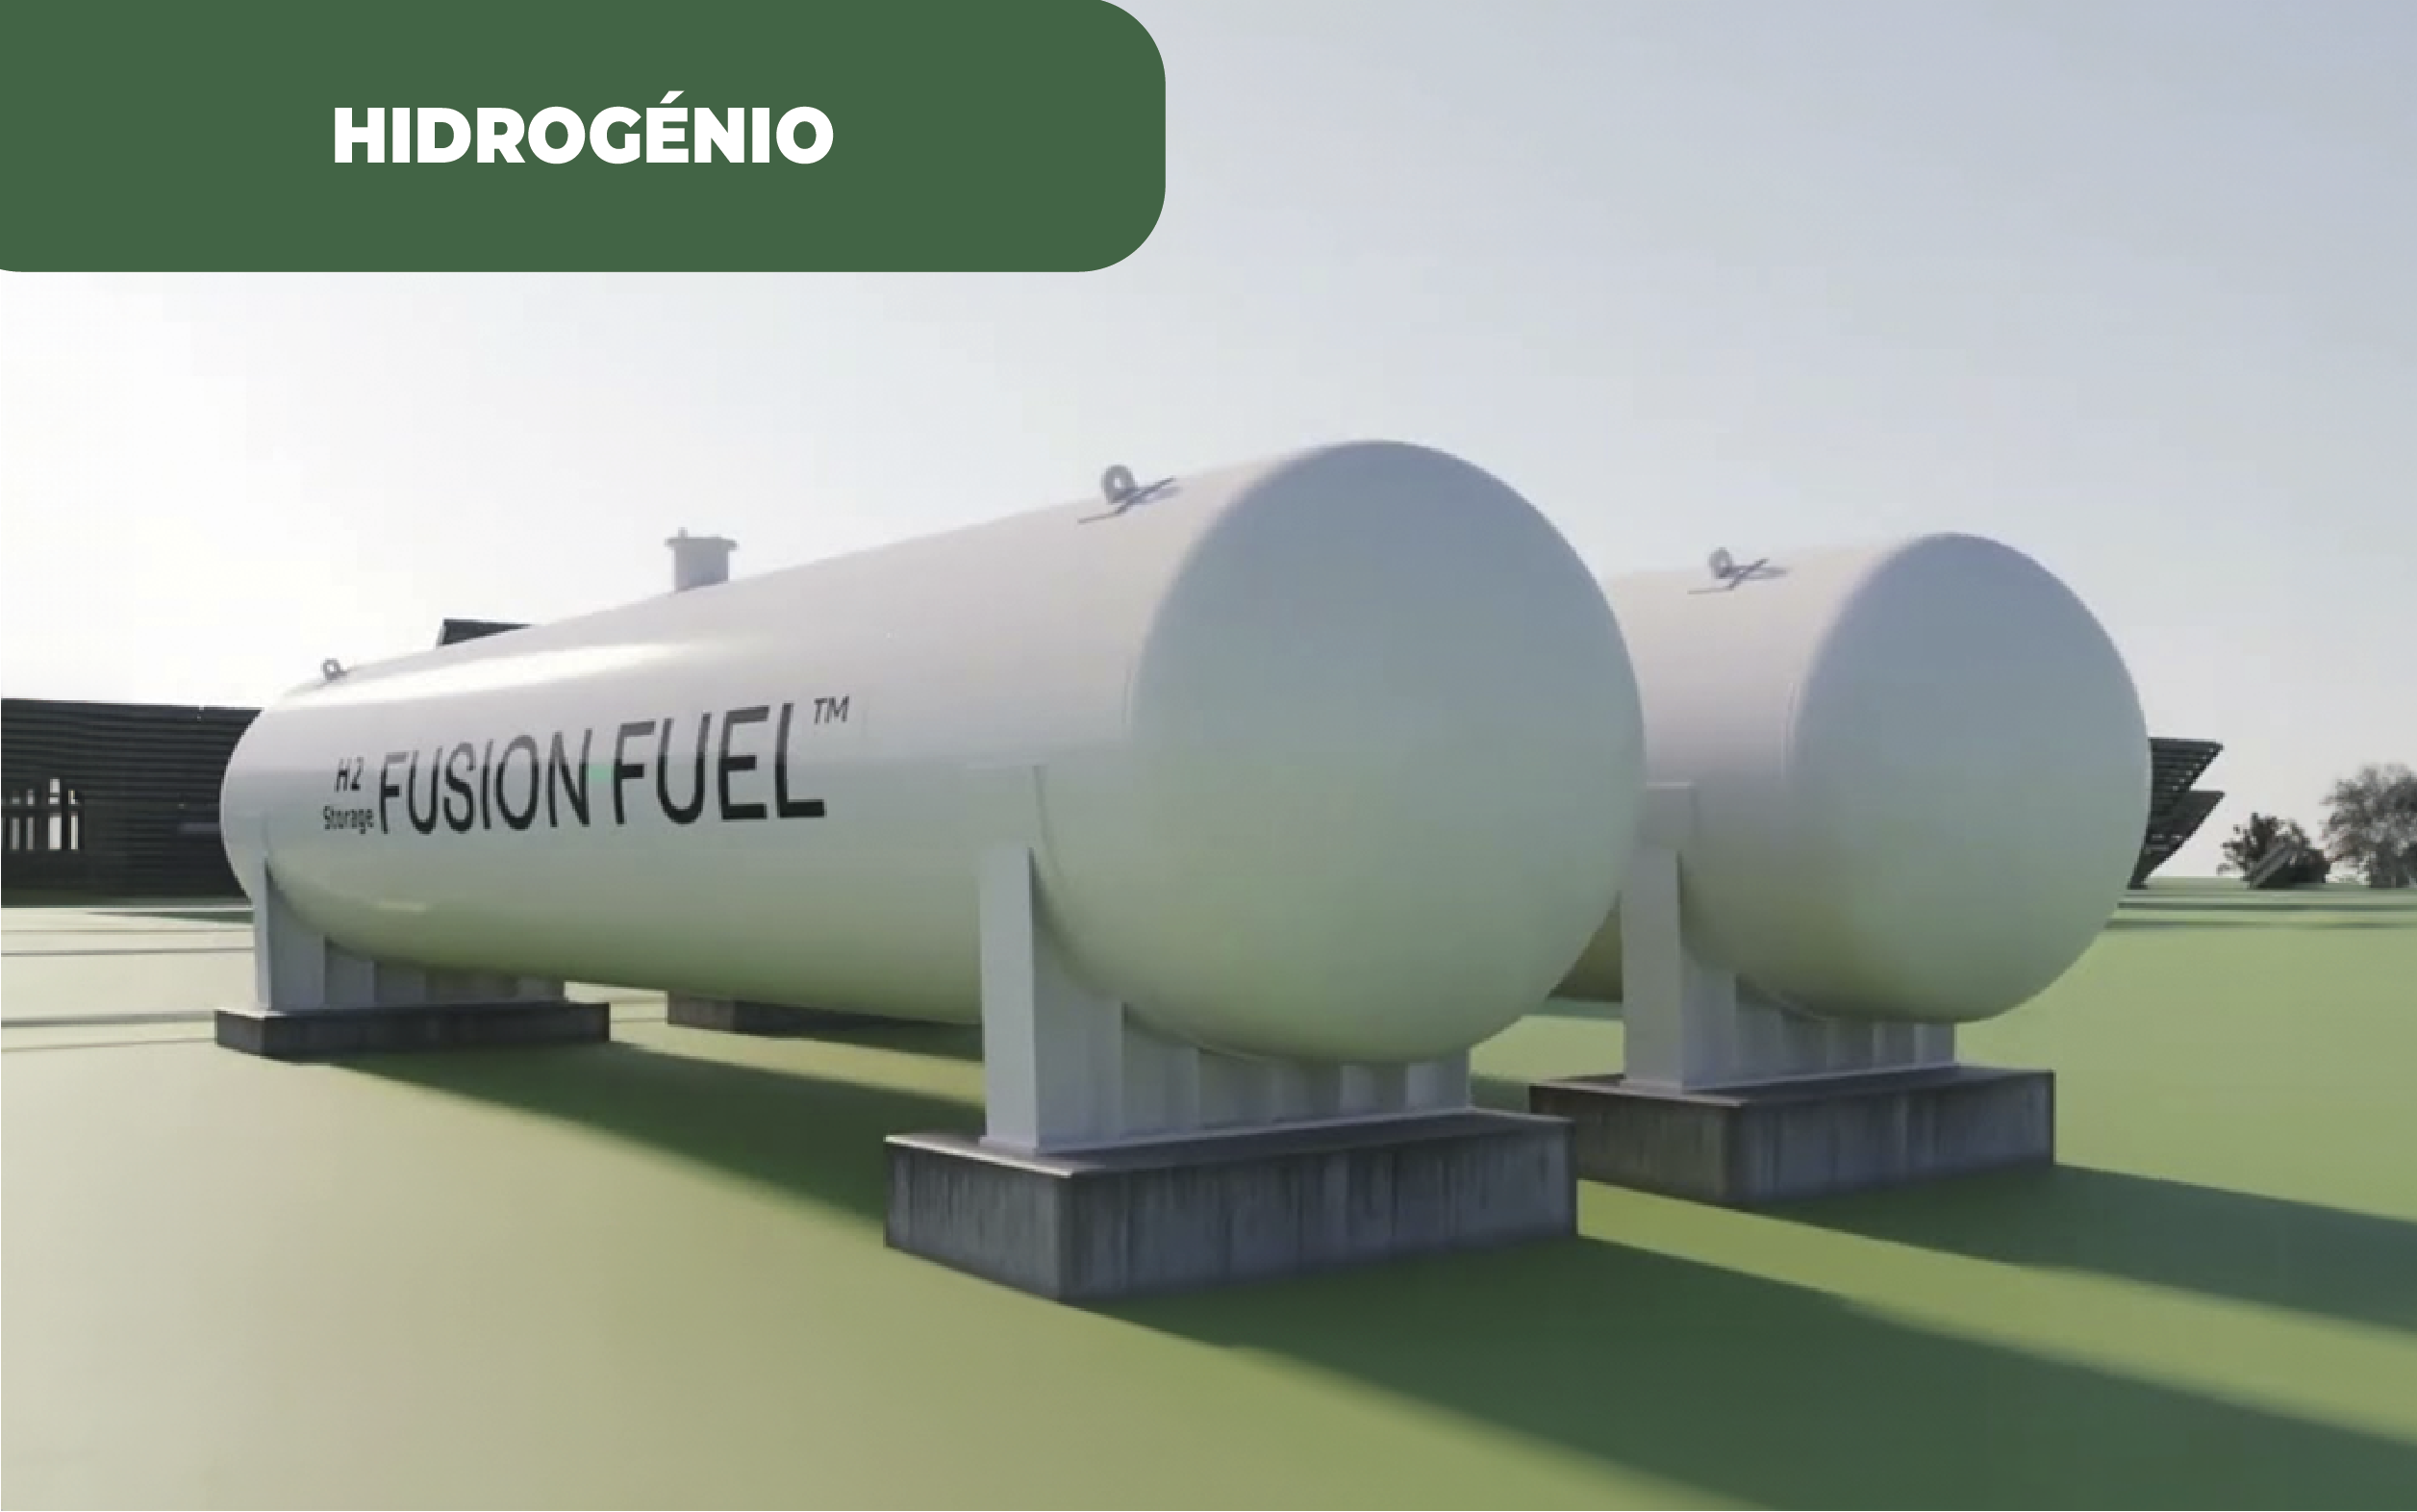 Imagem ilustrativa a cores de dois tanques de armazenamento de gás, com as palavras Fusion Fuel escrita numa das laterais. O projeto de hidrogénio verde no Alentejo , pelo consórcio H2TALENT, acaba de ganhar 1 milhão de euros para investimento.